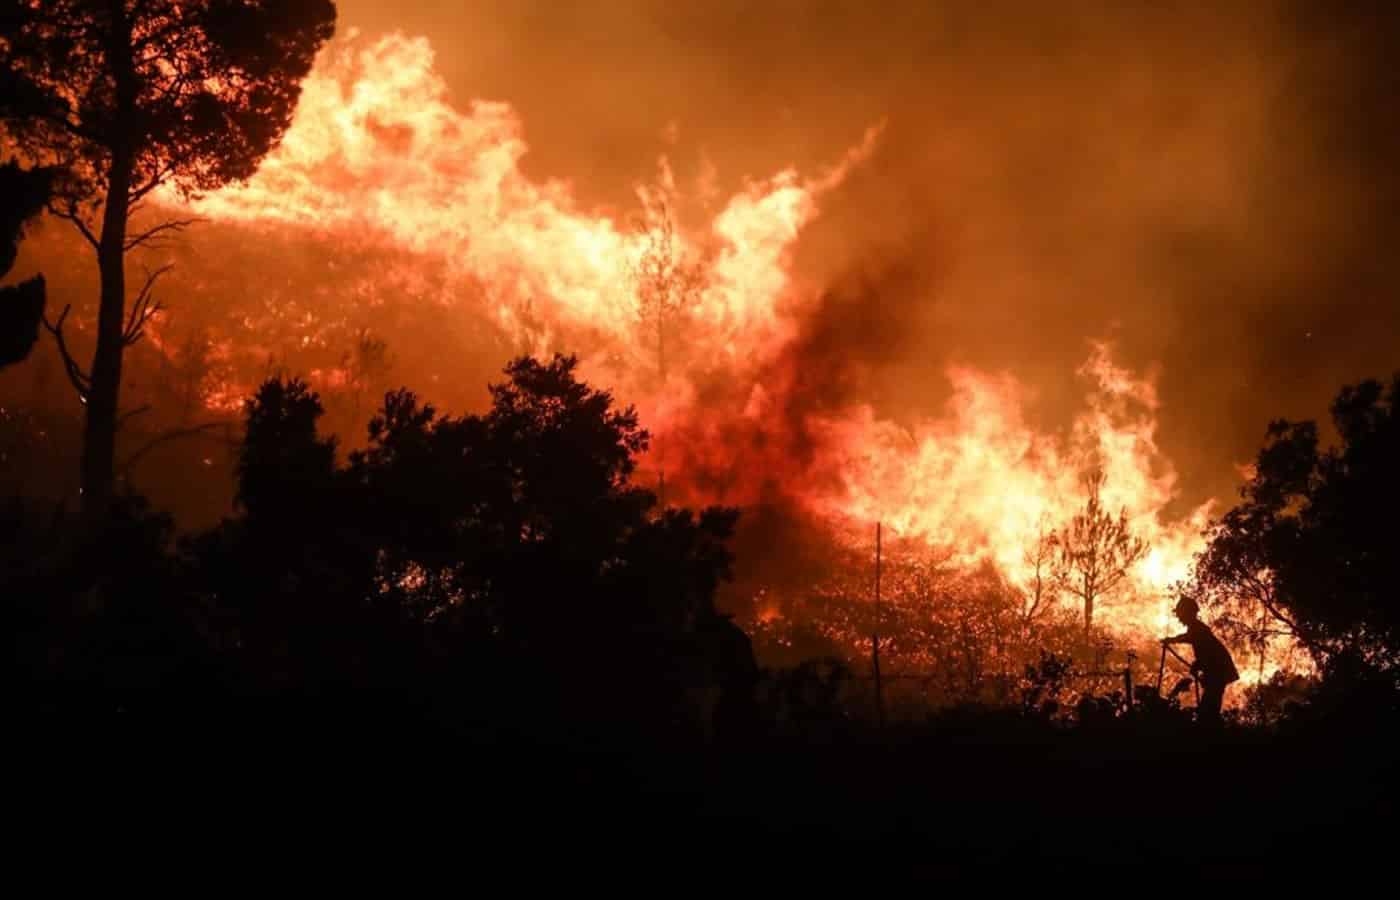 Μπορεί θύματα ευτυχώς να μην είχε η καταστροφική φωτιά που καίει για ακόμα μια φορά την Αττική, αυτή την φορά την Πεντέλη και τις περιοχές